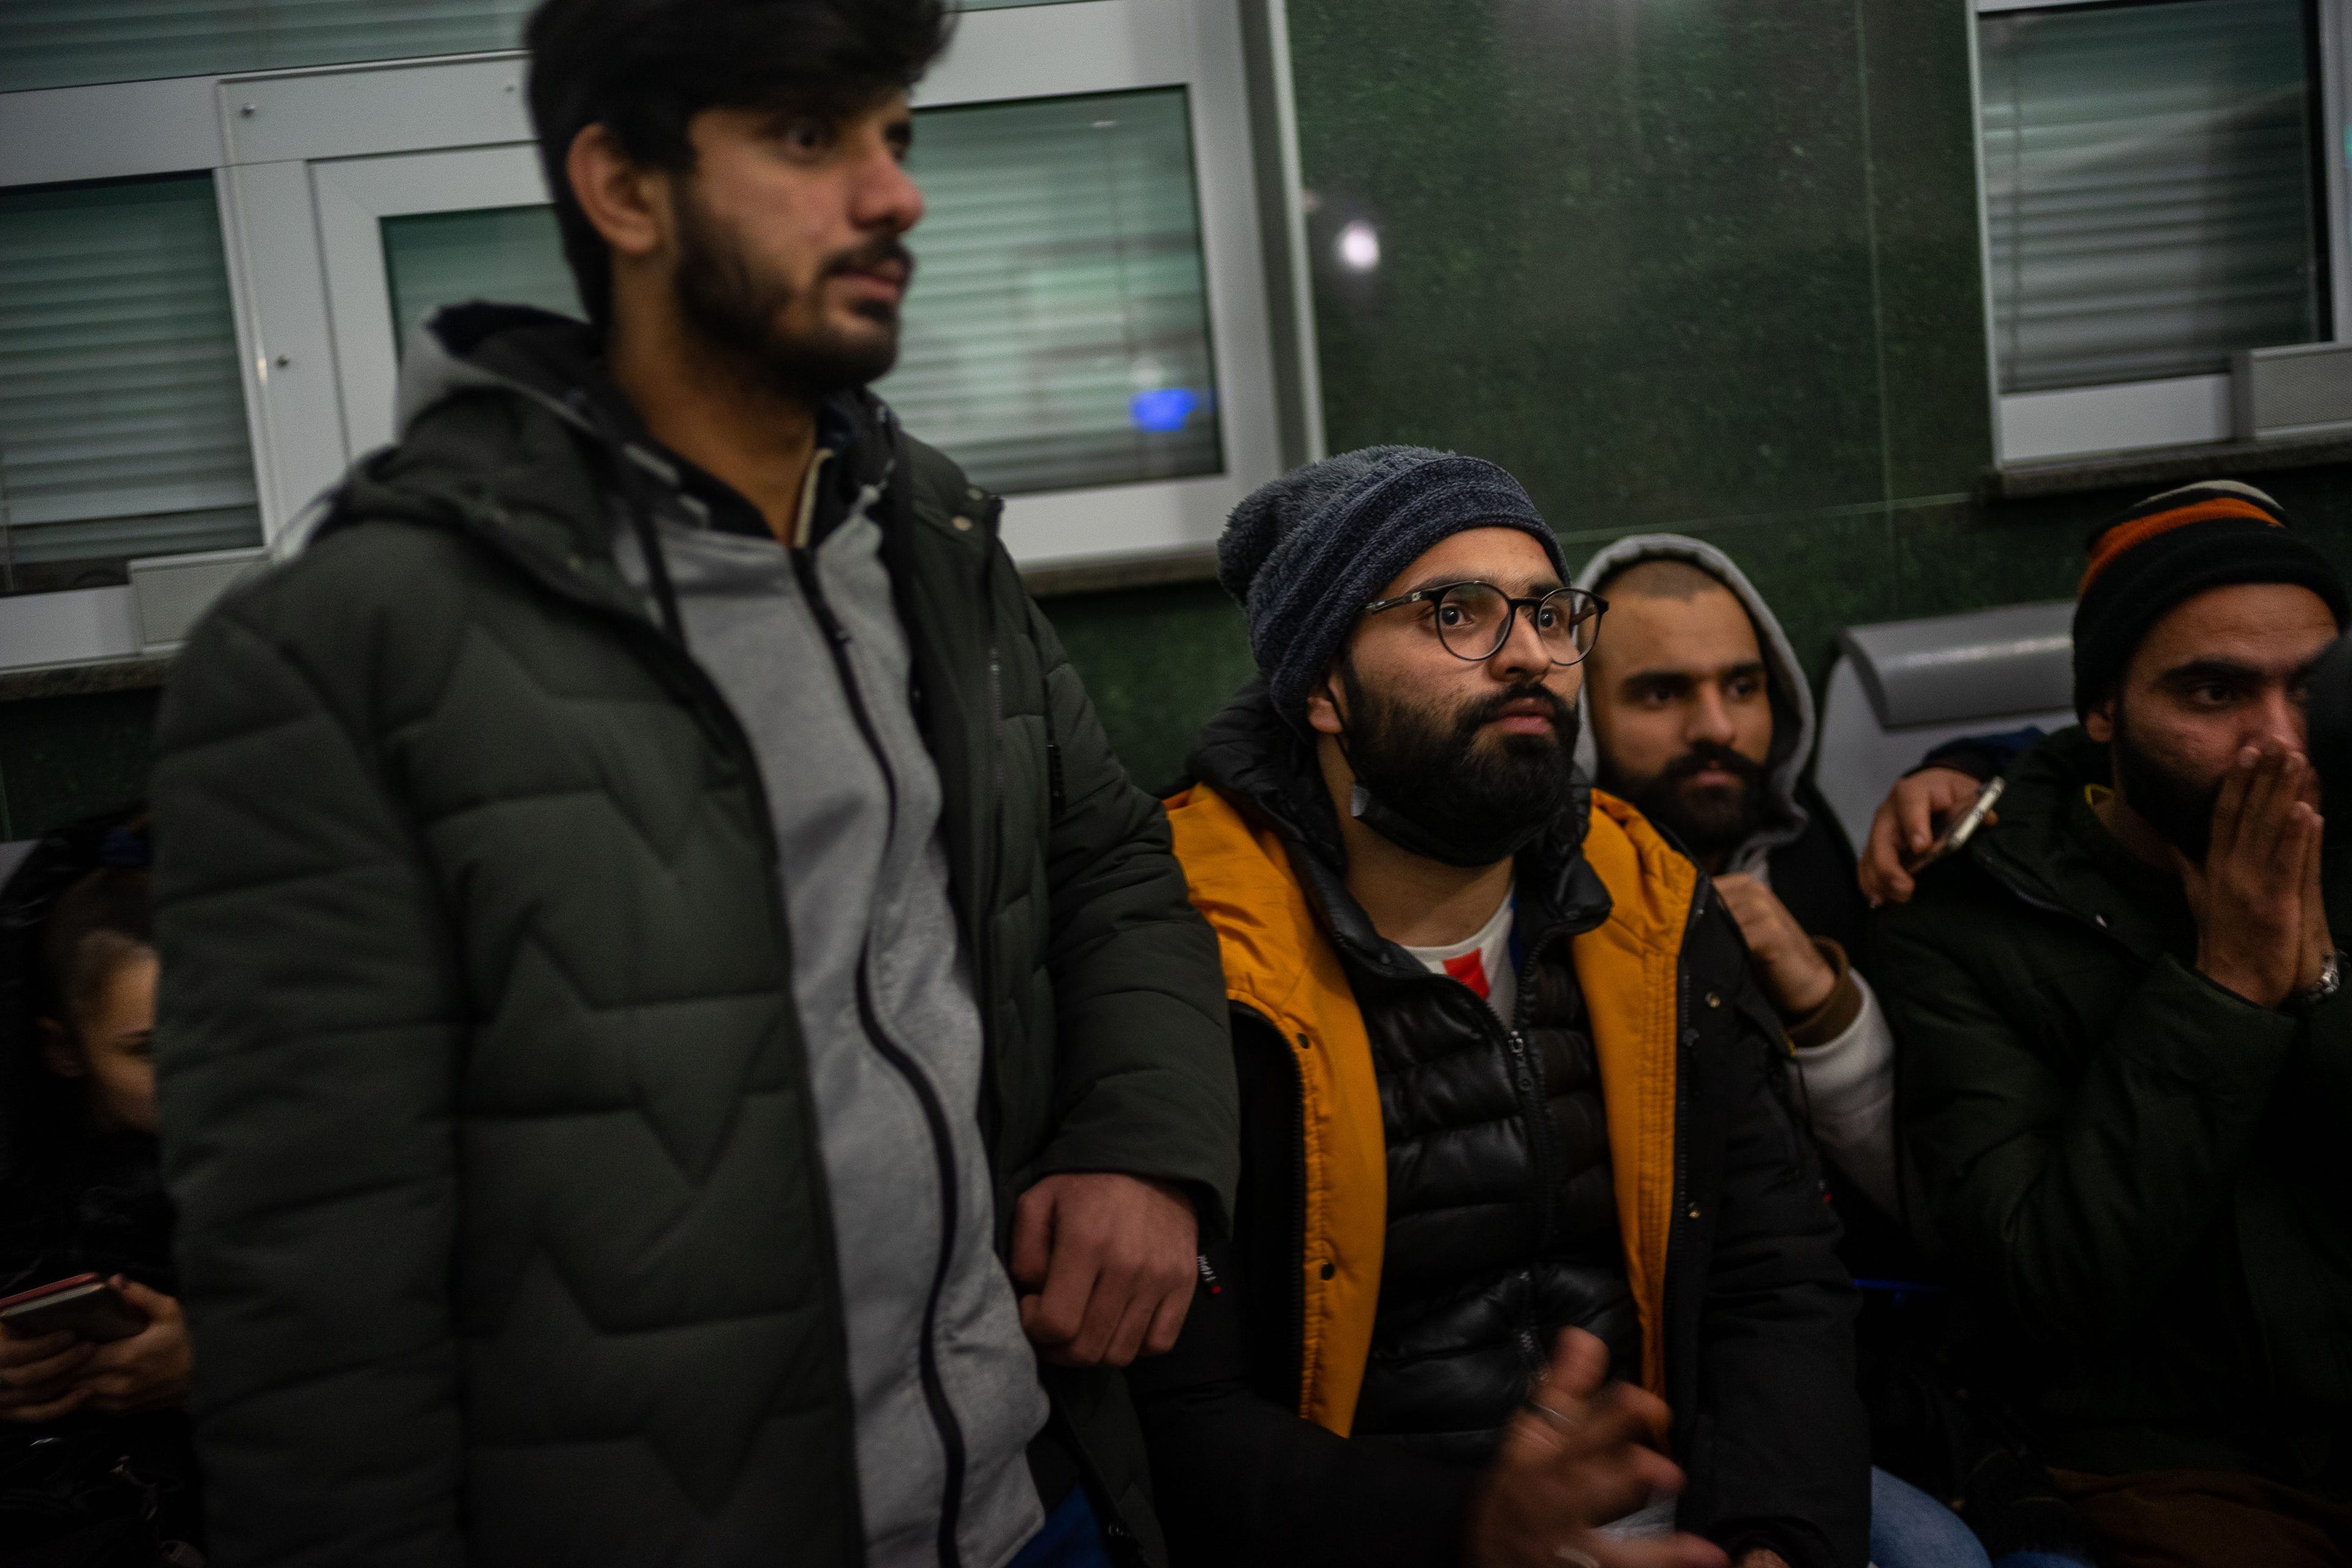 M Ahtisham Bhutta (con chaqueta naranja) es uno de los ocho estudiantes pakistaníes que esperan un tren para salir de Ucrania.